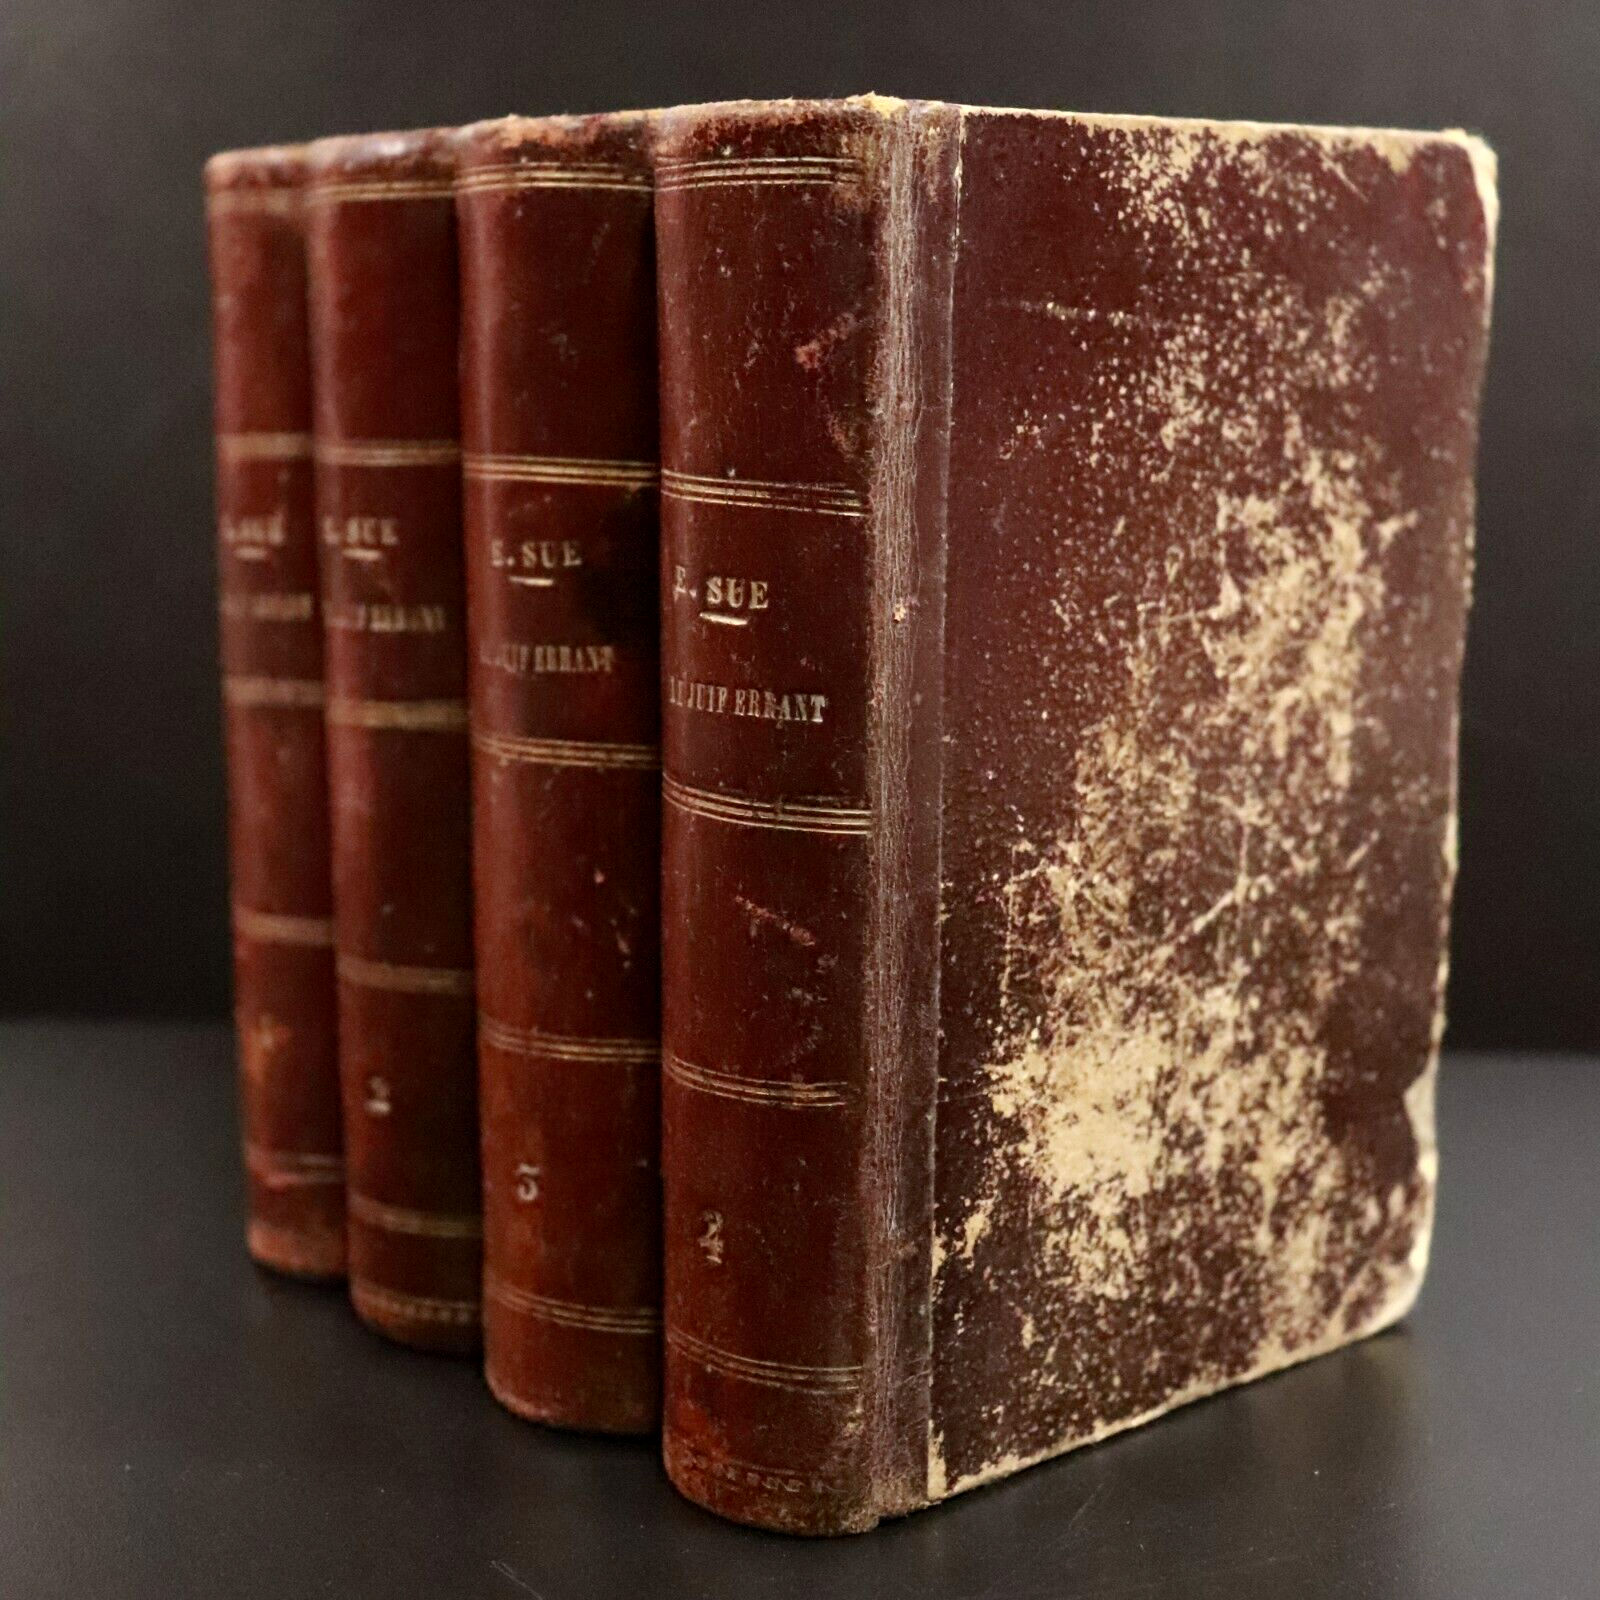 1845 4vol Le Juif Errant by Eugène Sue Antique French Fiction Books